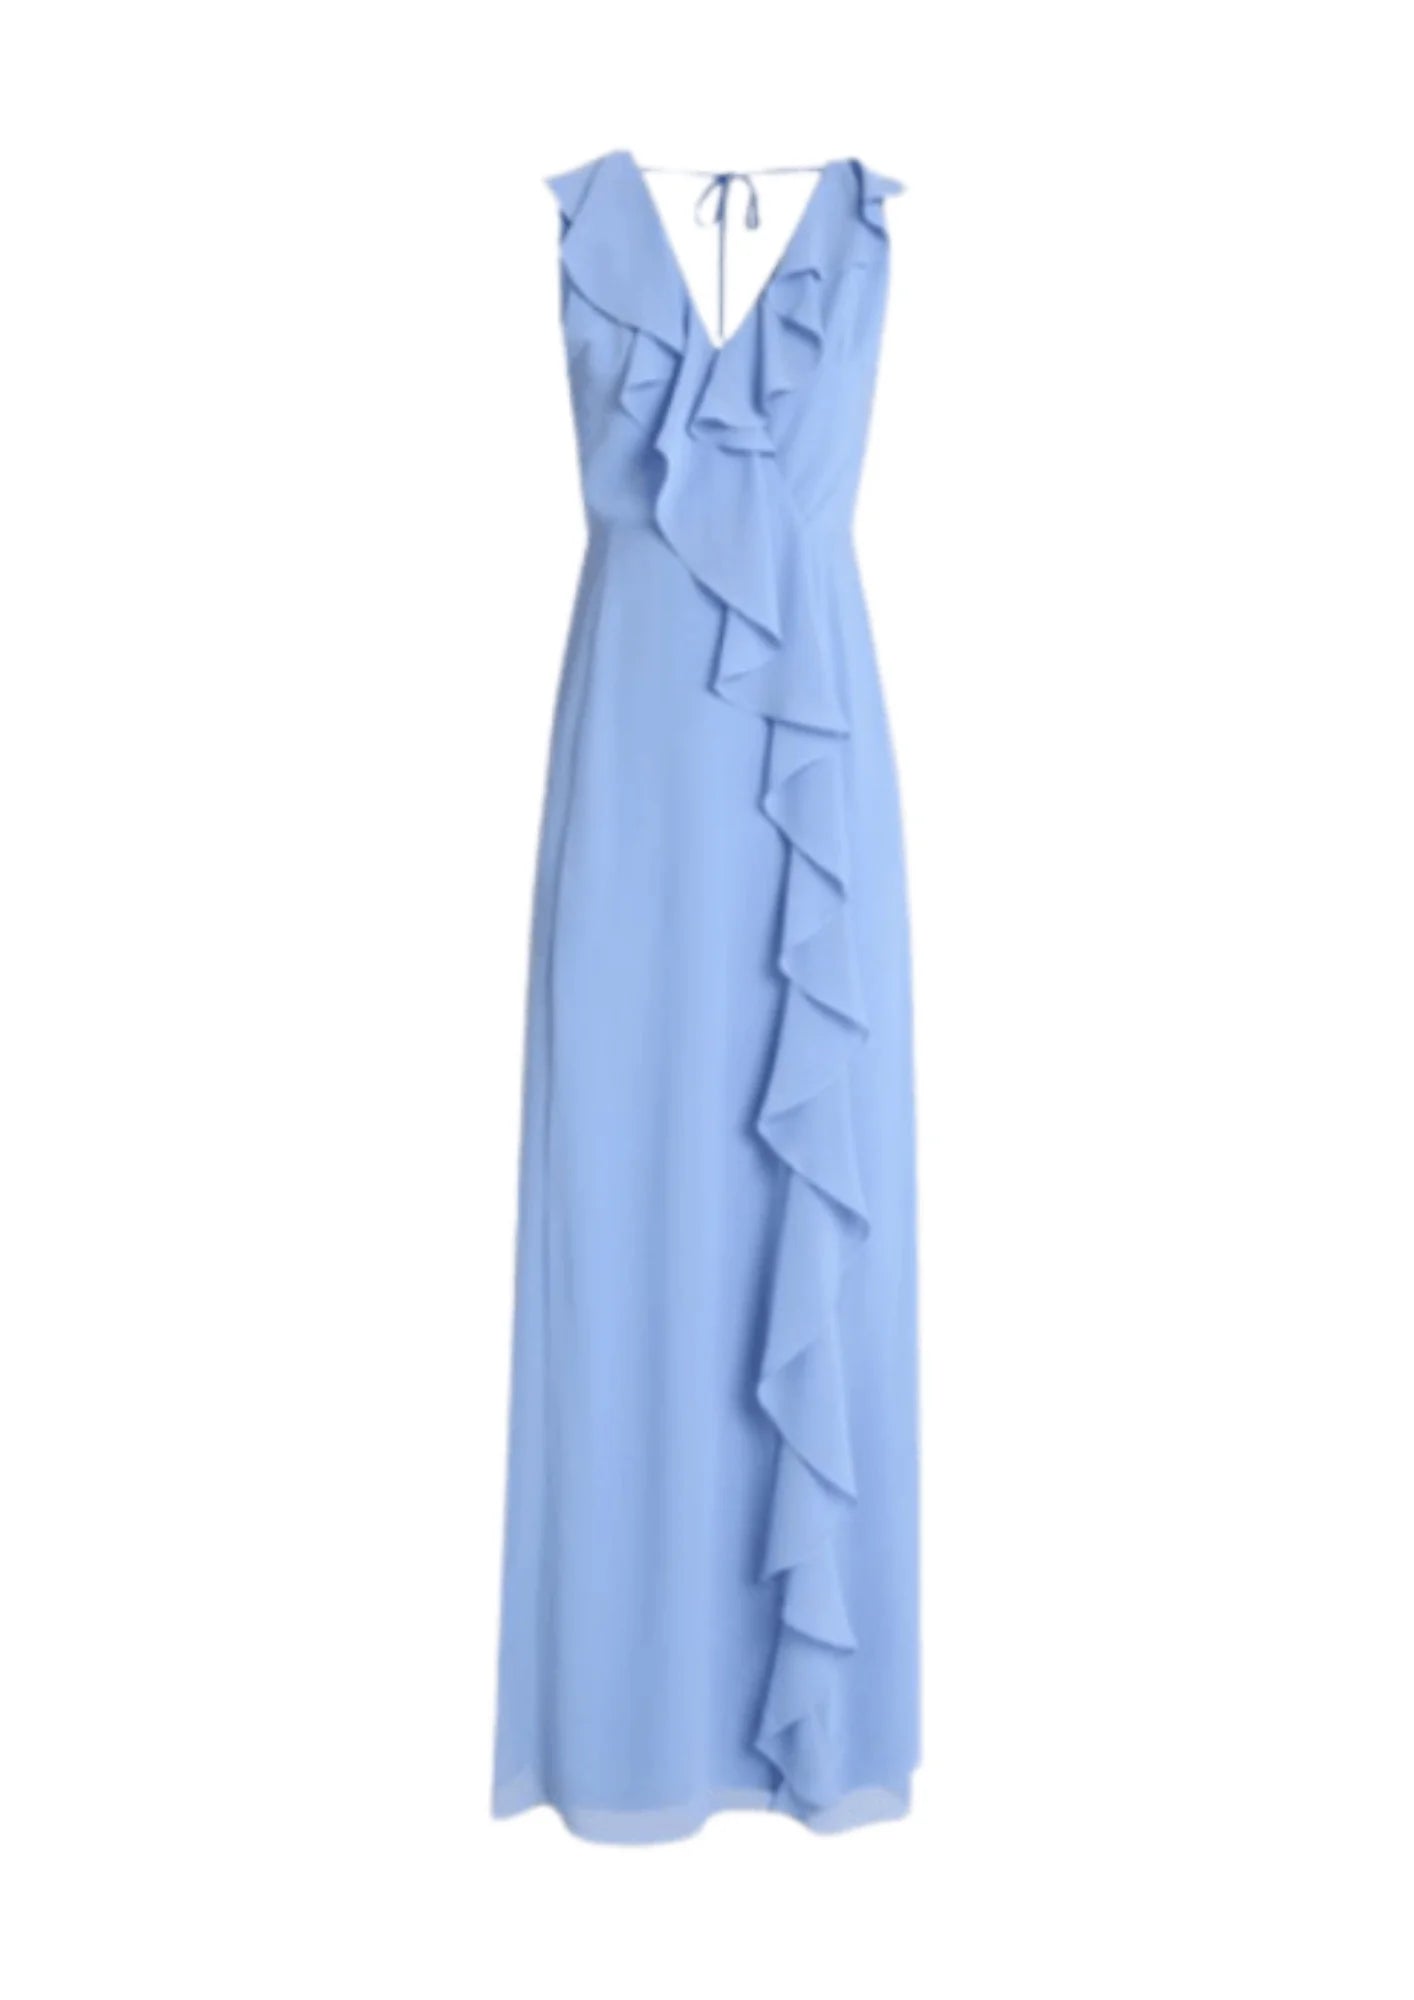 Hellblau gekräuseltes langes Kleid